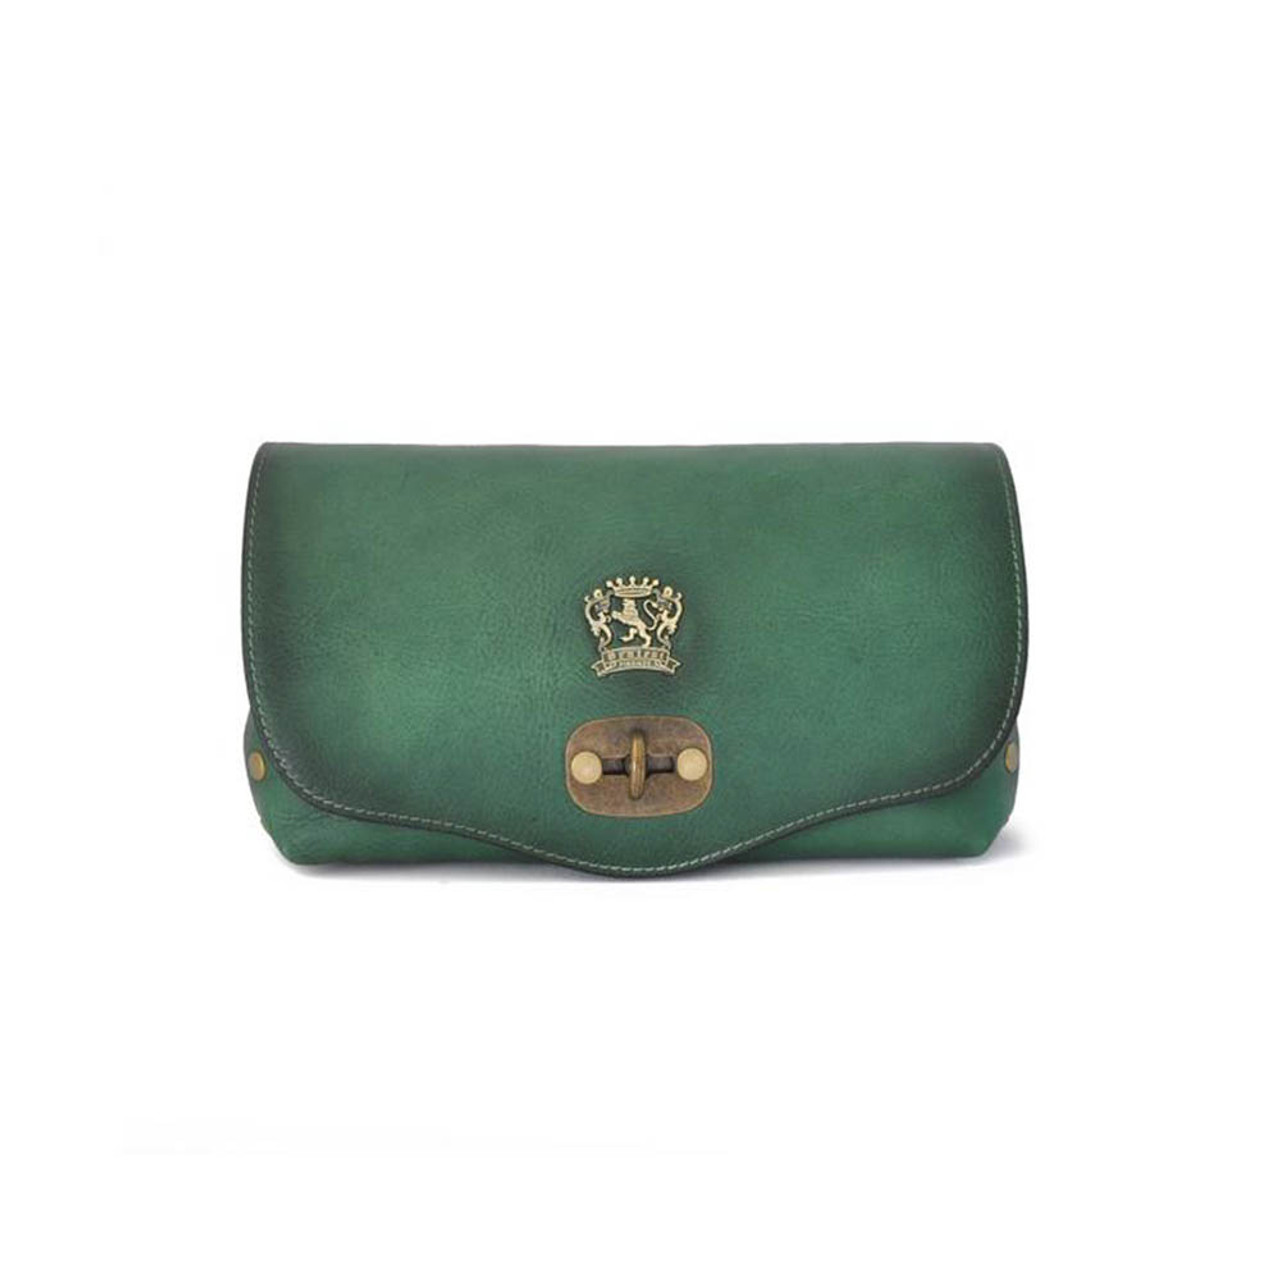 Toscanella Messenger Shoulder Bag in Genuine Leather Colour Green